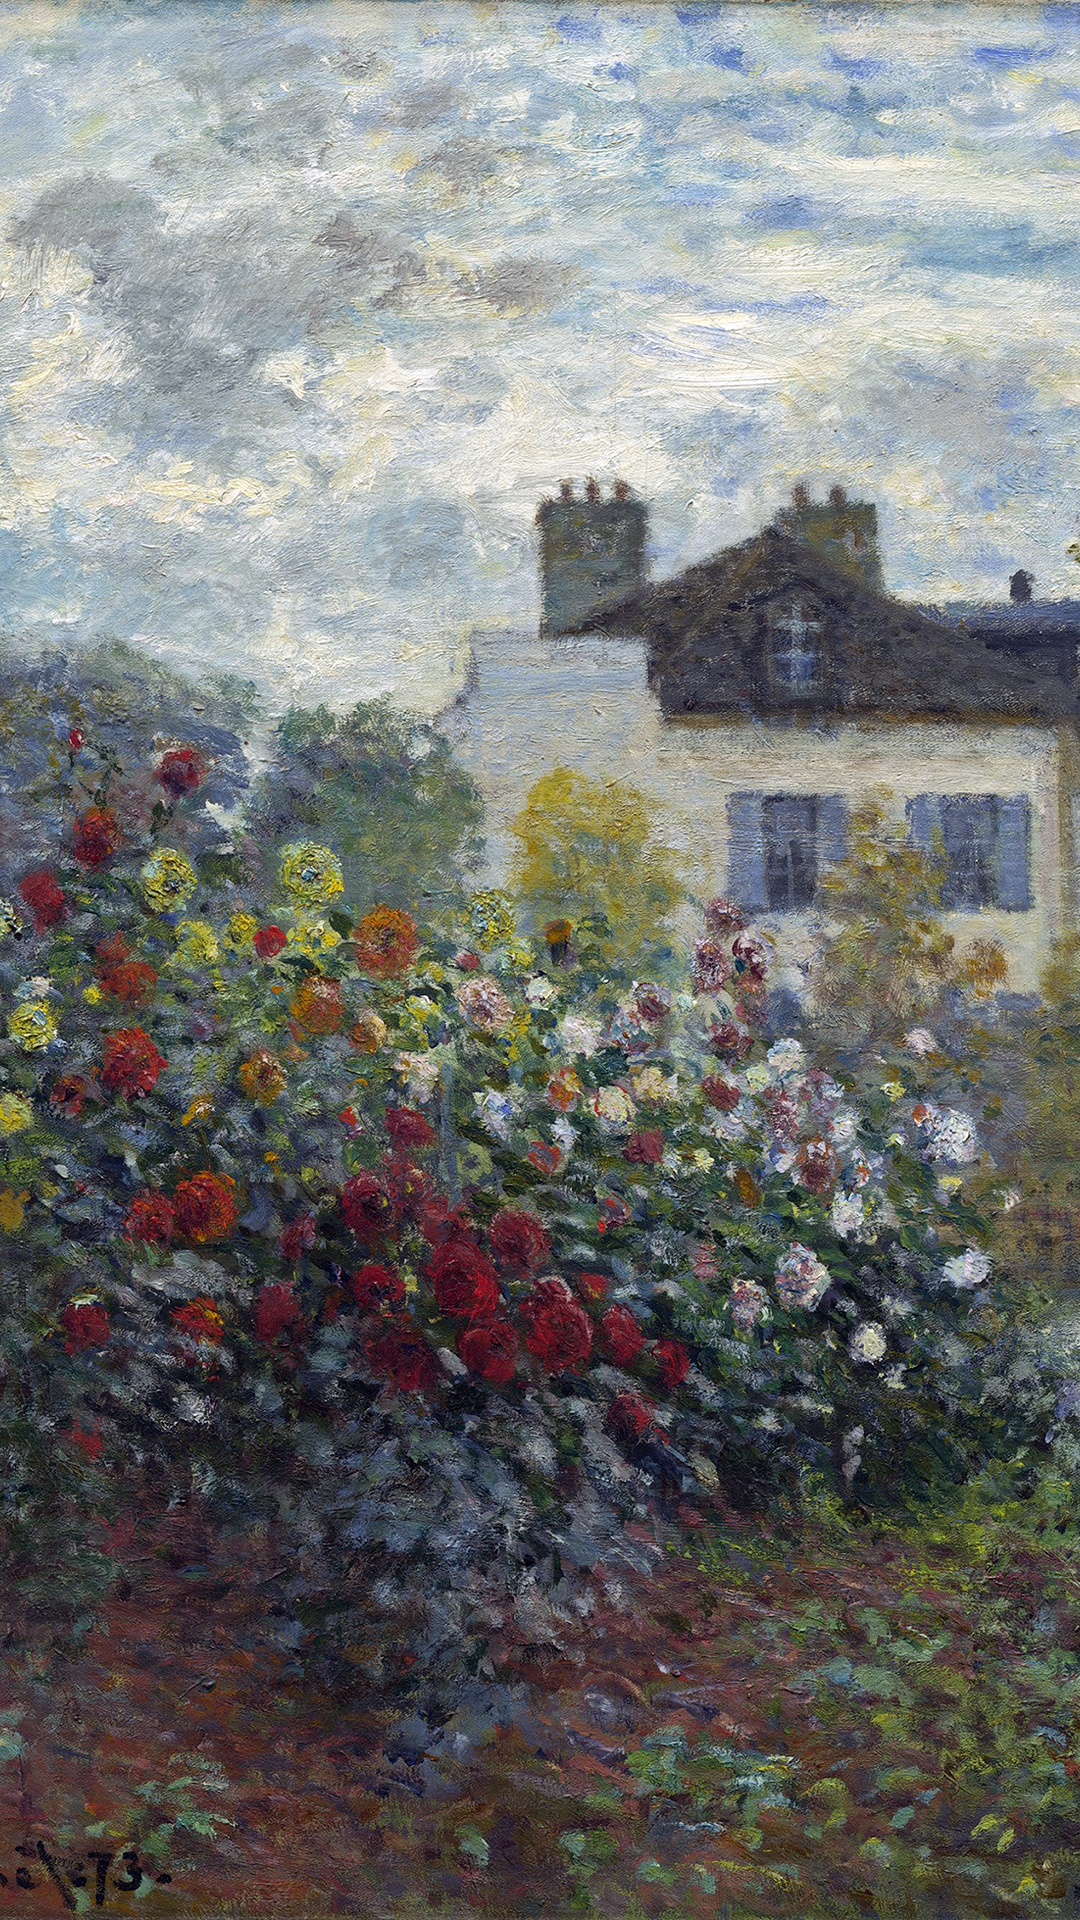 クロード・モネ - アルジャントゥイユの家の庭